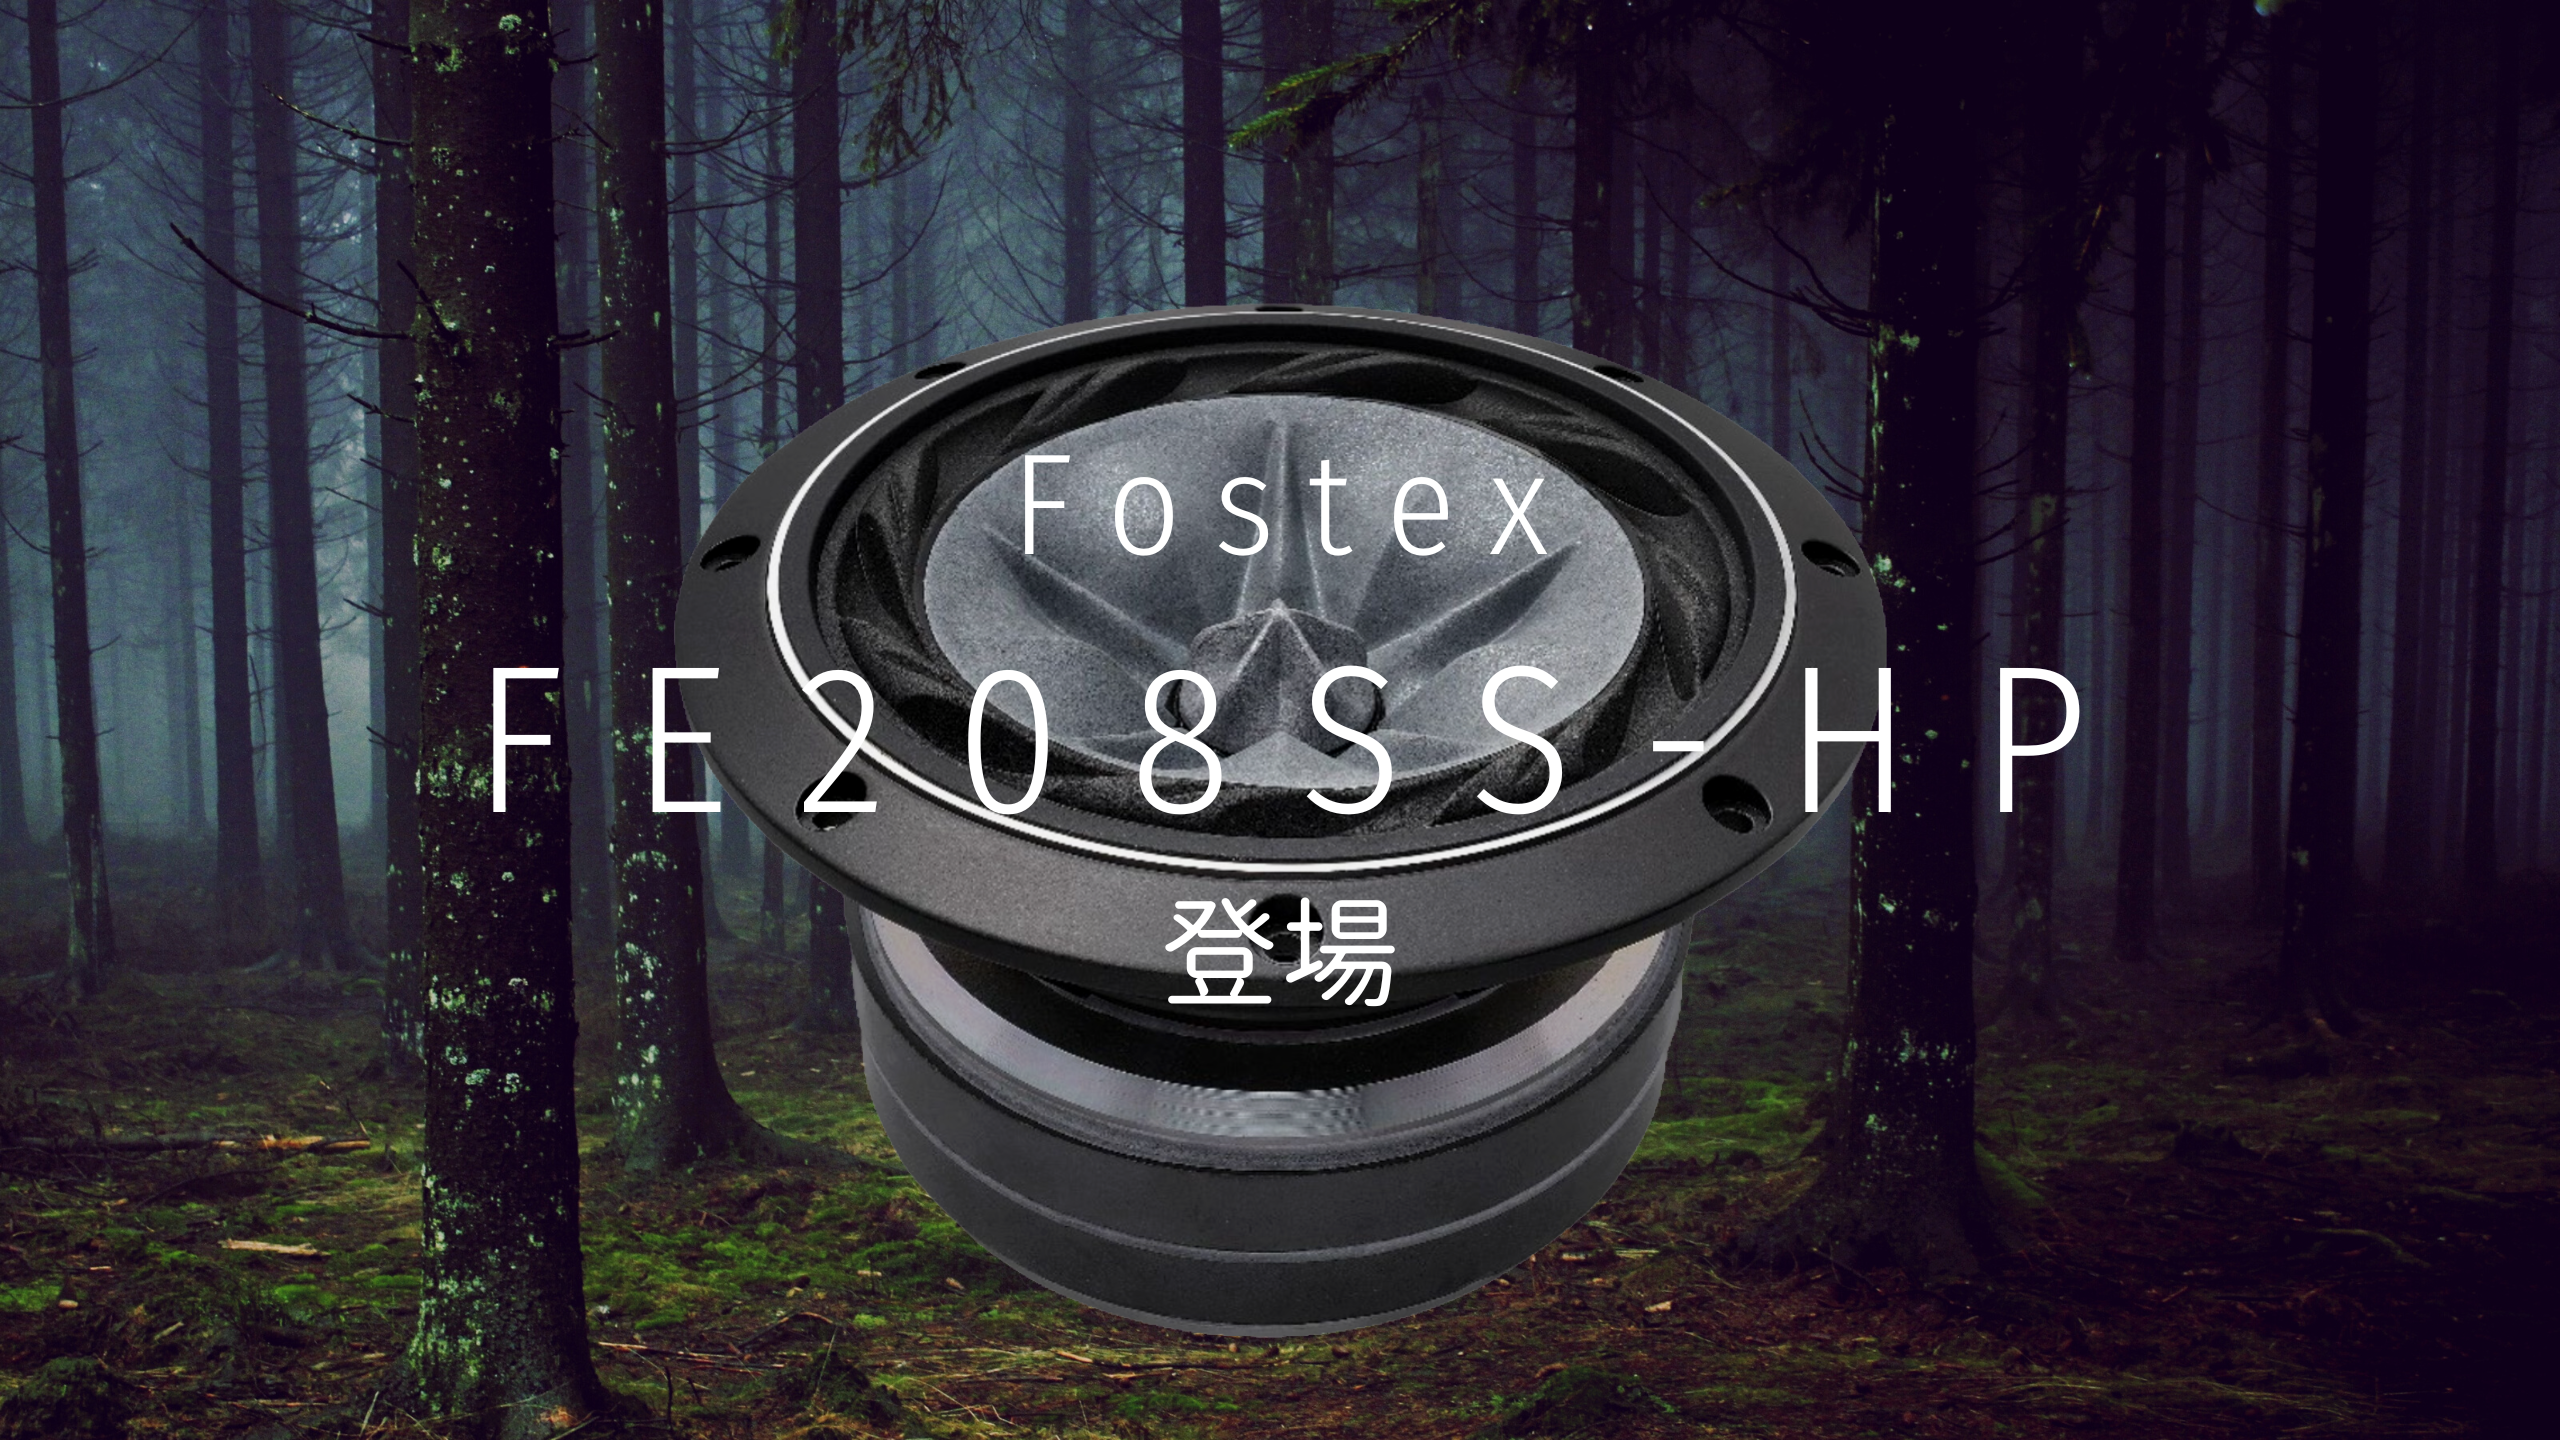 Fostex FE208SS-HP 登場